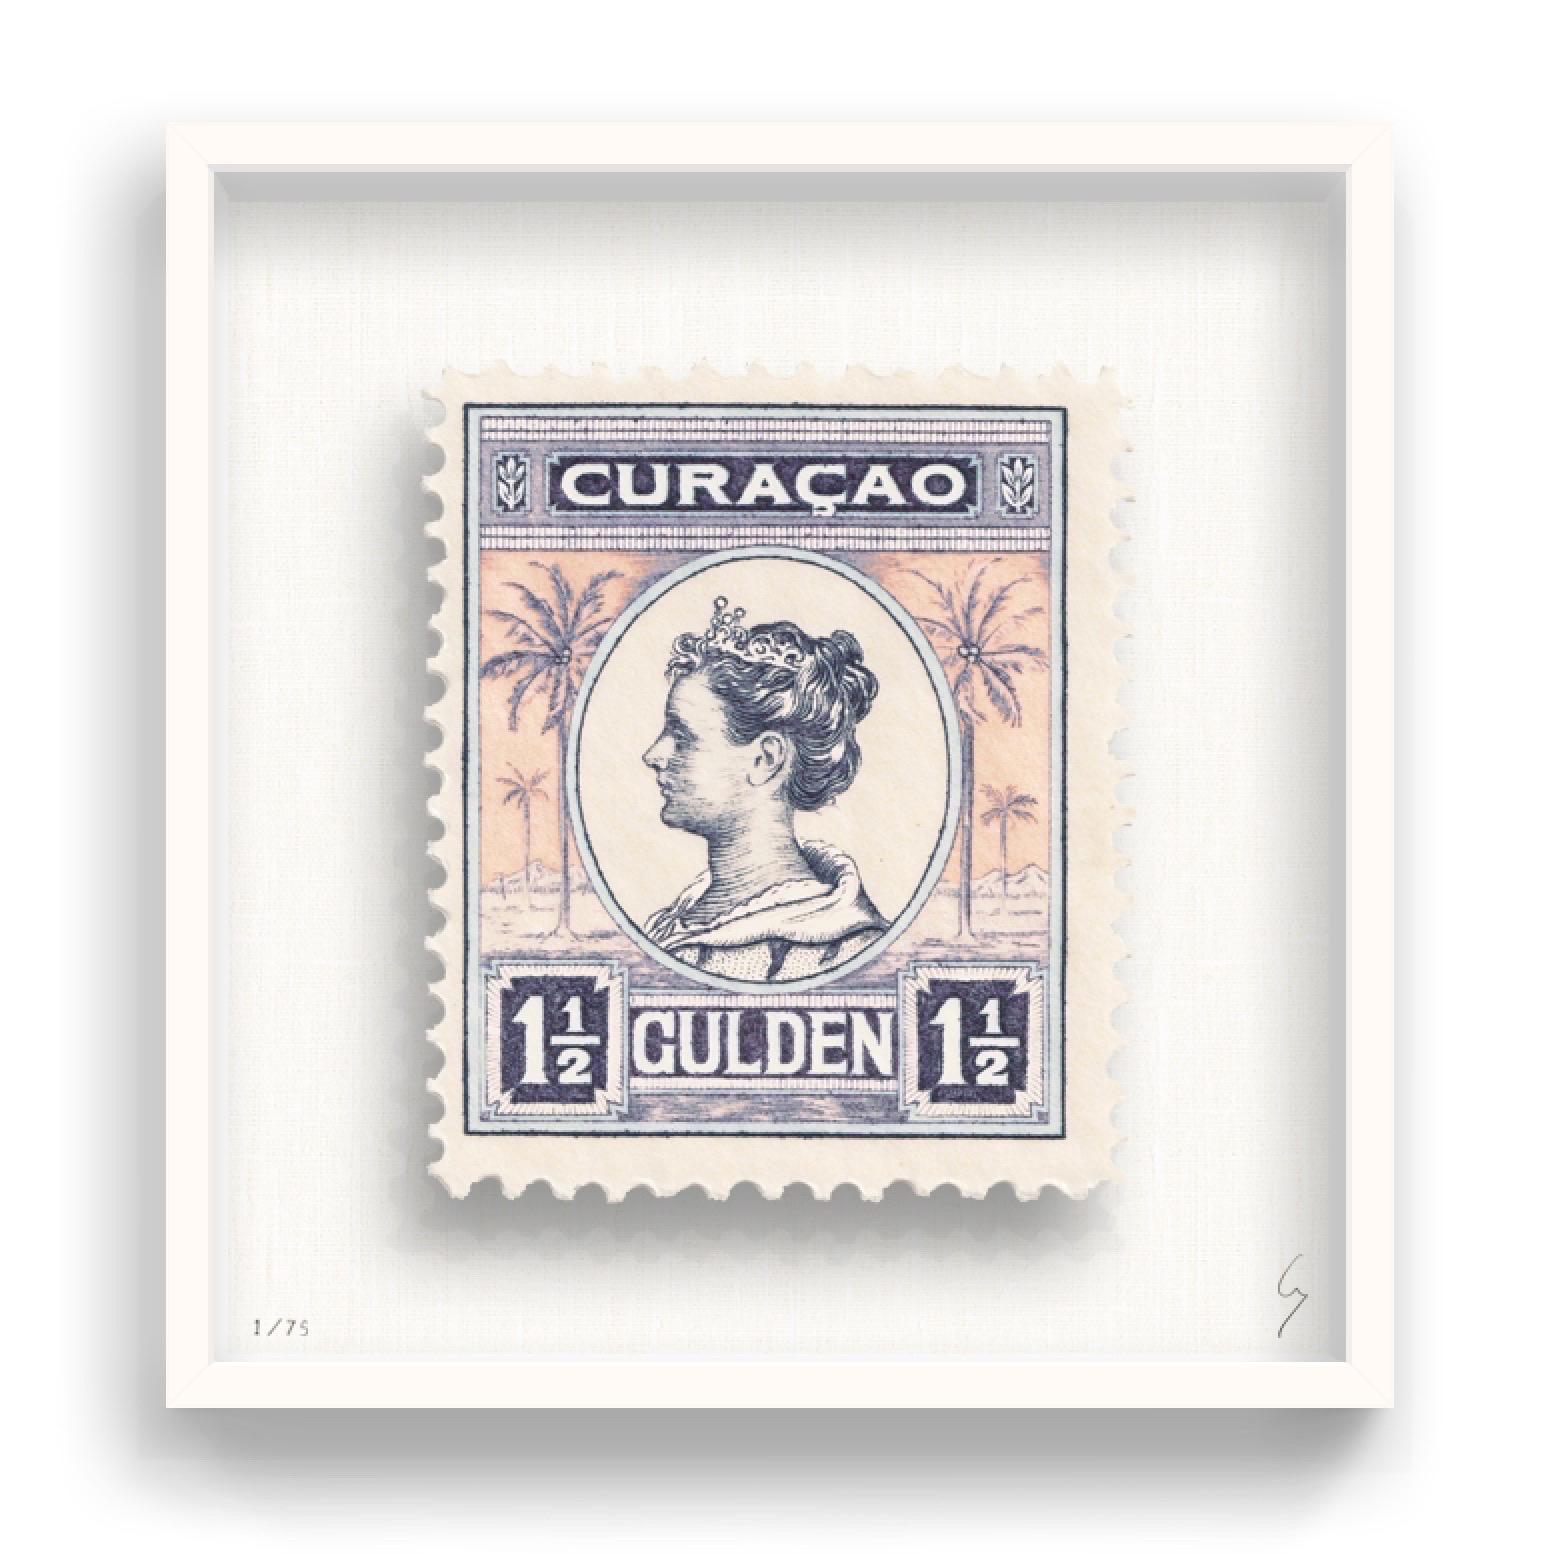 Guy Gee, Curacao (mittelgroß)

Handgravur auf 350gsm auf G.F Smith Karton
53 x 56cm (20 4/5 x 22 2/5 in)
Inklusive Rahmen 
Auflage von 75 

Jedes Kunstwerk von Guy wurde auf der Grundlage einer Originalbriefmarke digital nachgebildet. Das von Hand